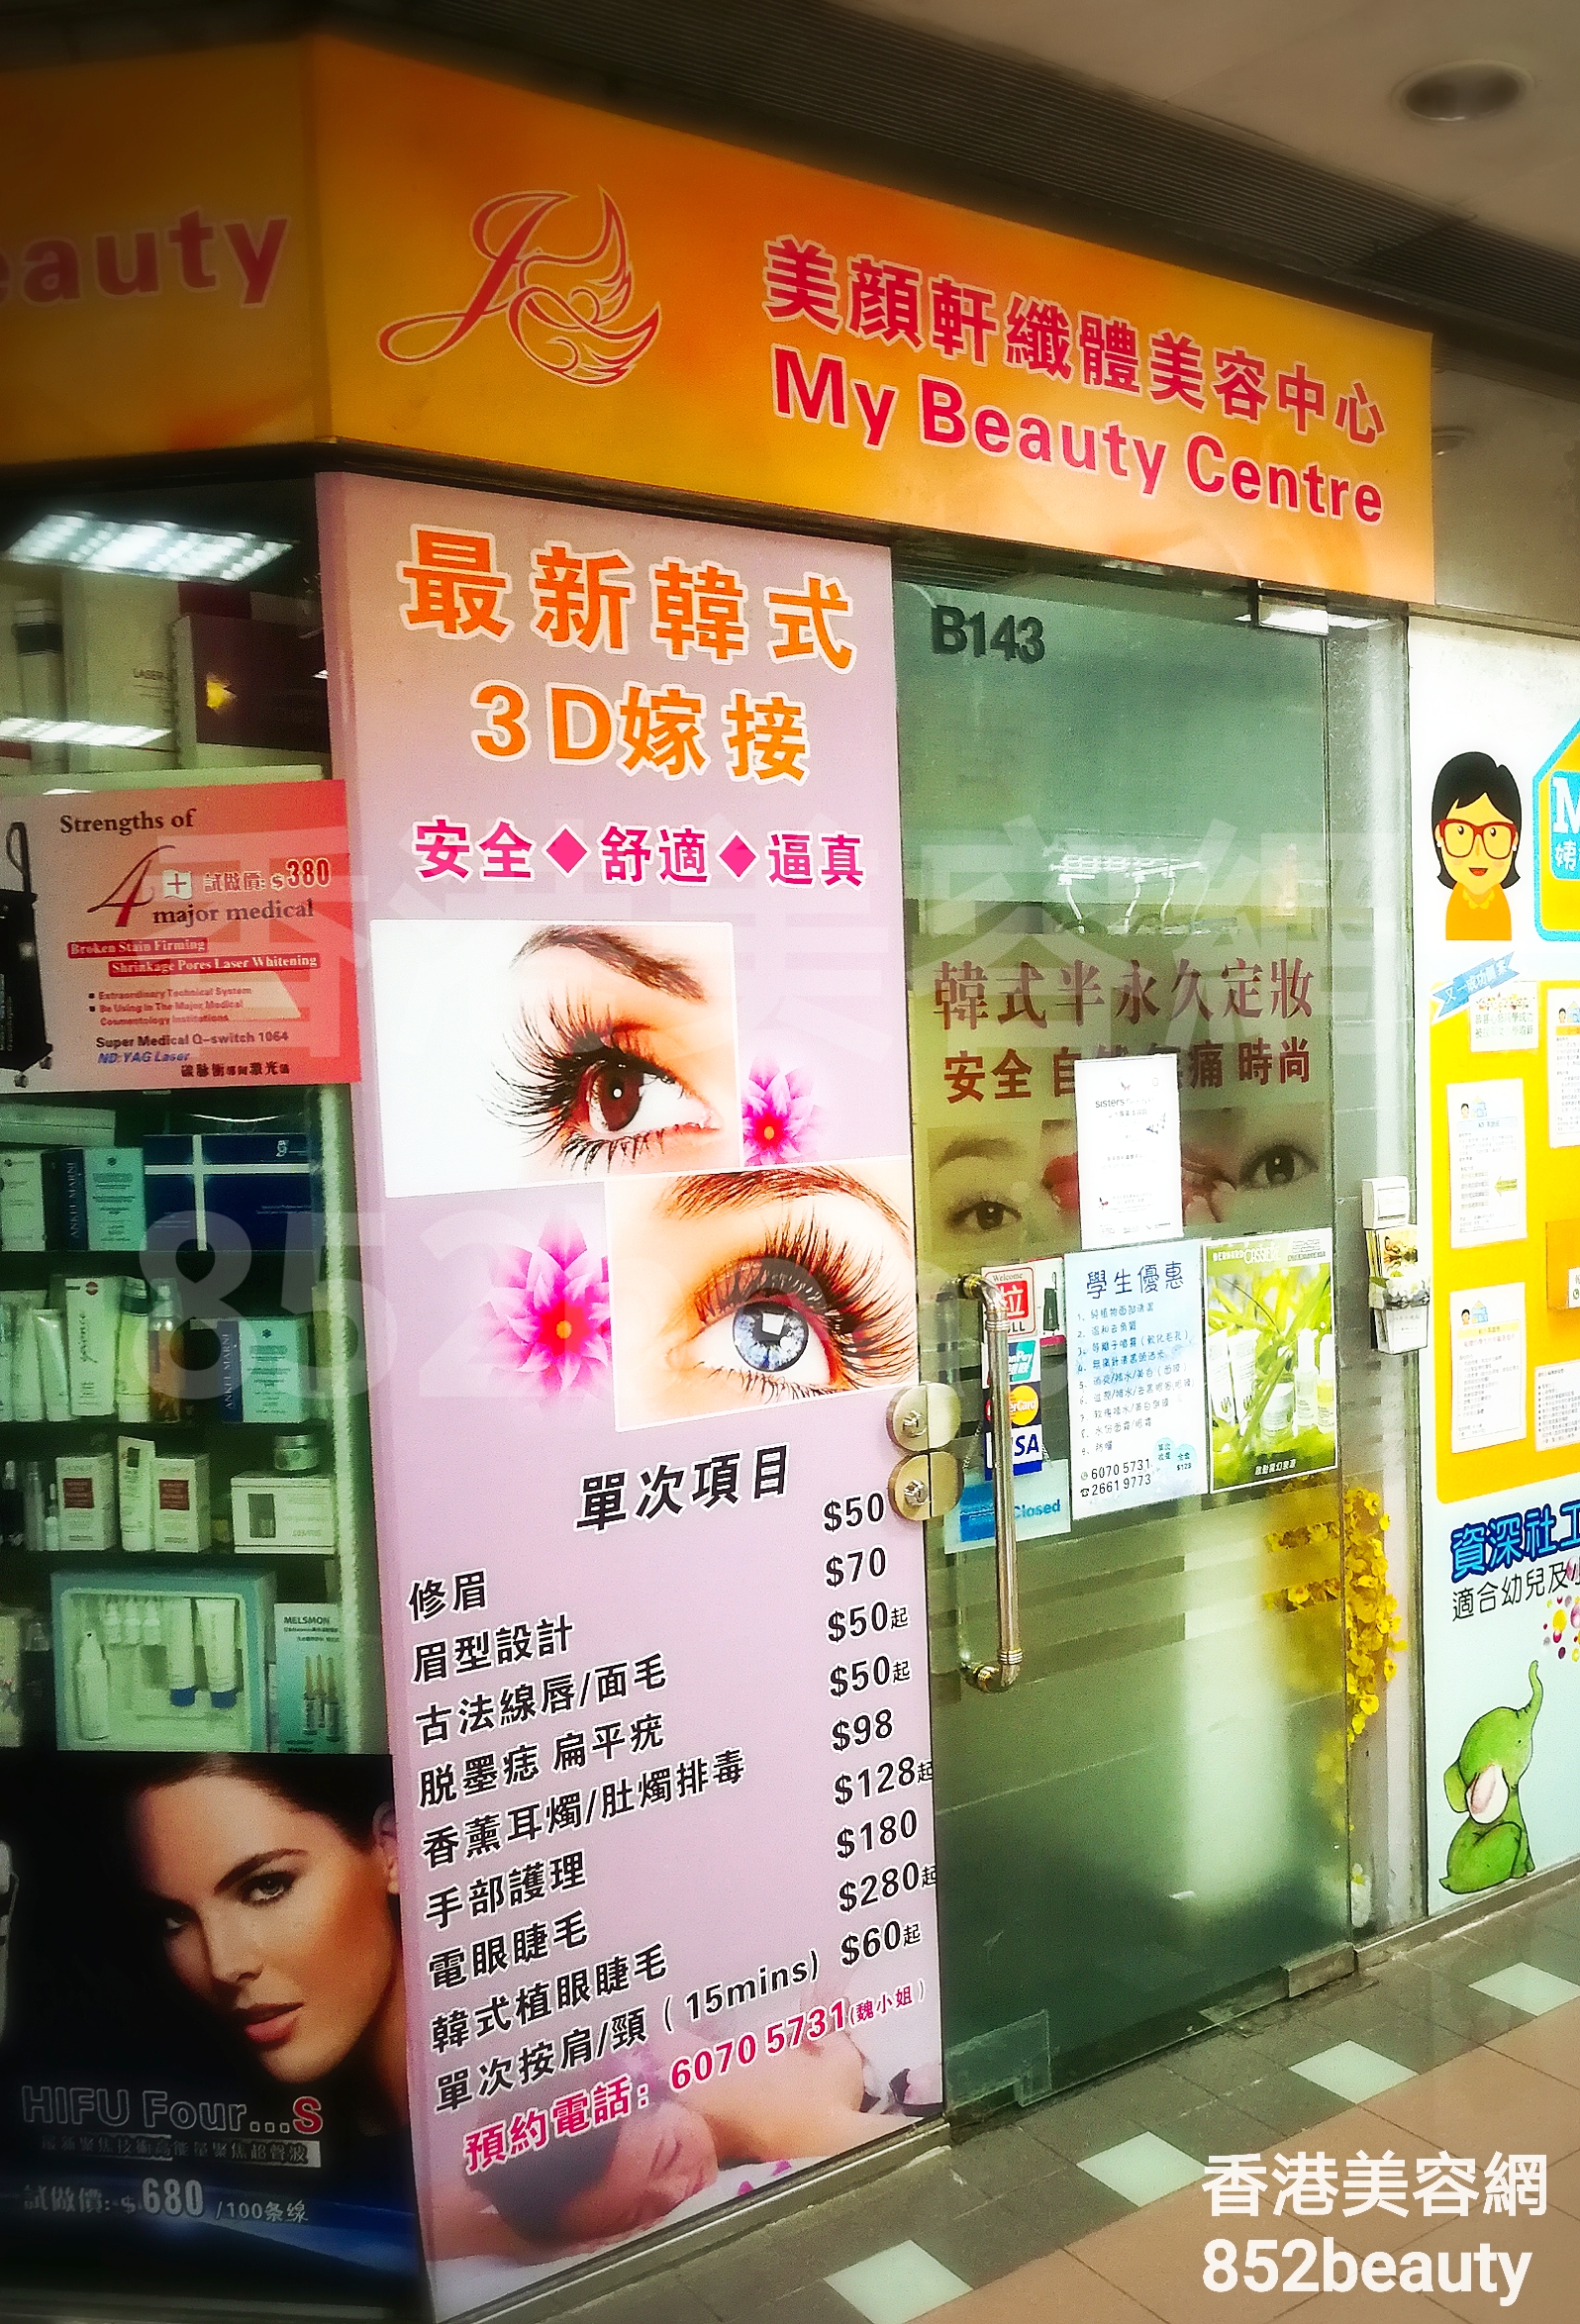 香港美容網 Hong Kong Beauty Salon 美容院 / 美容師: 美顏軒纖體美容中心